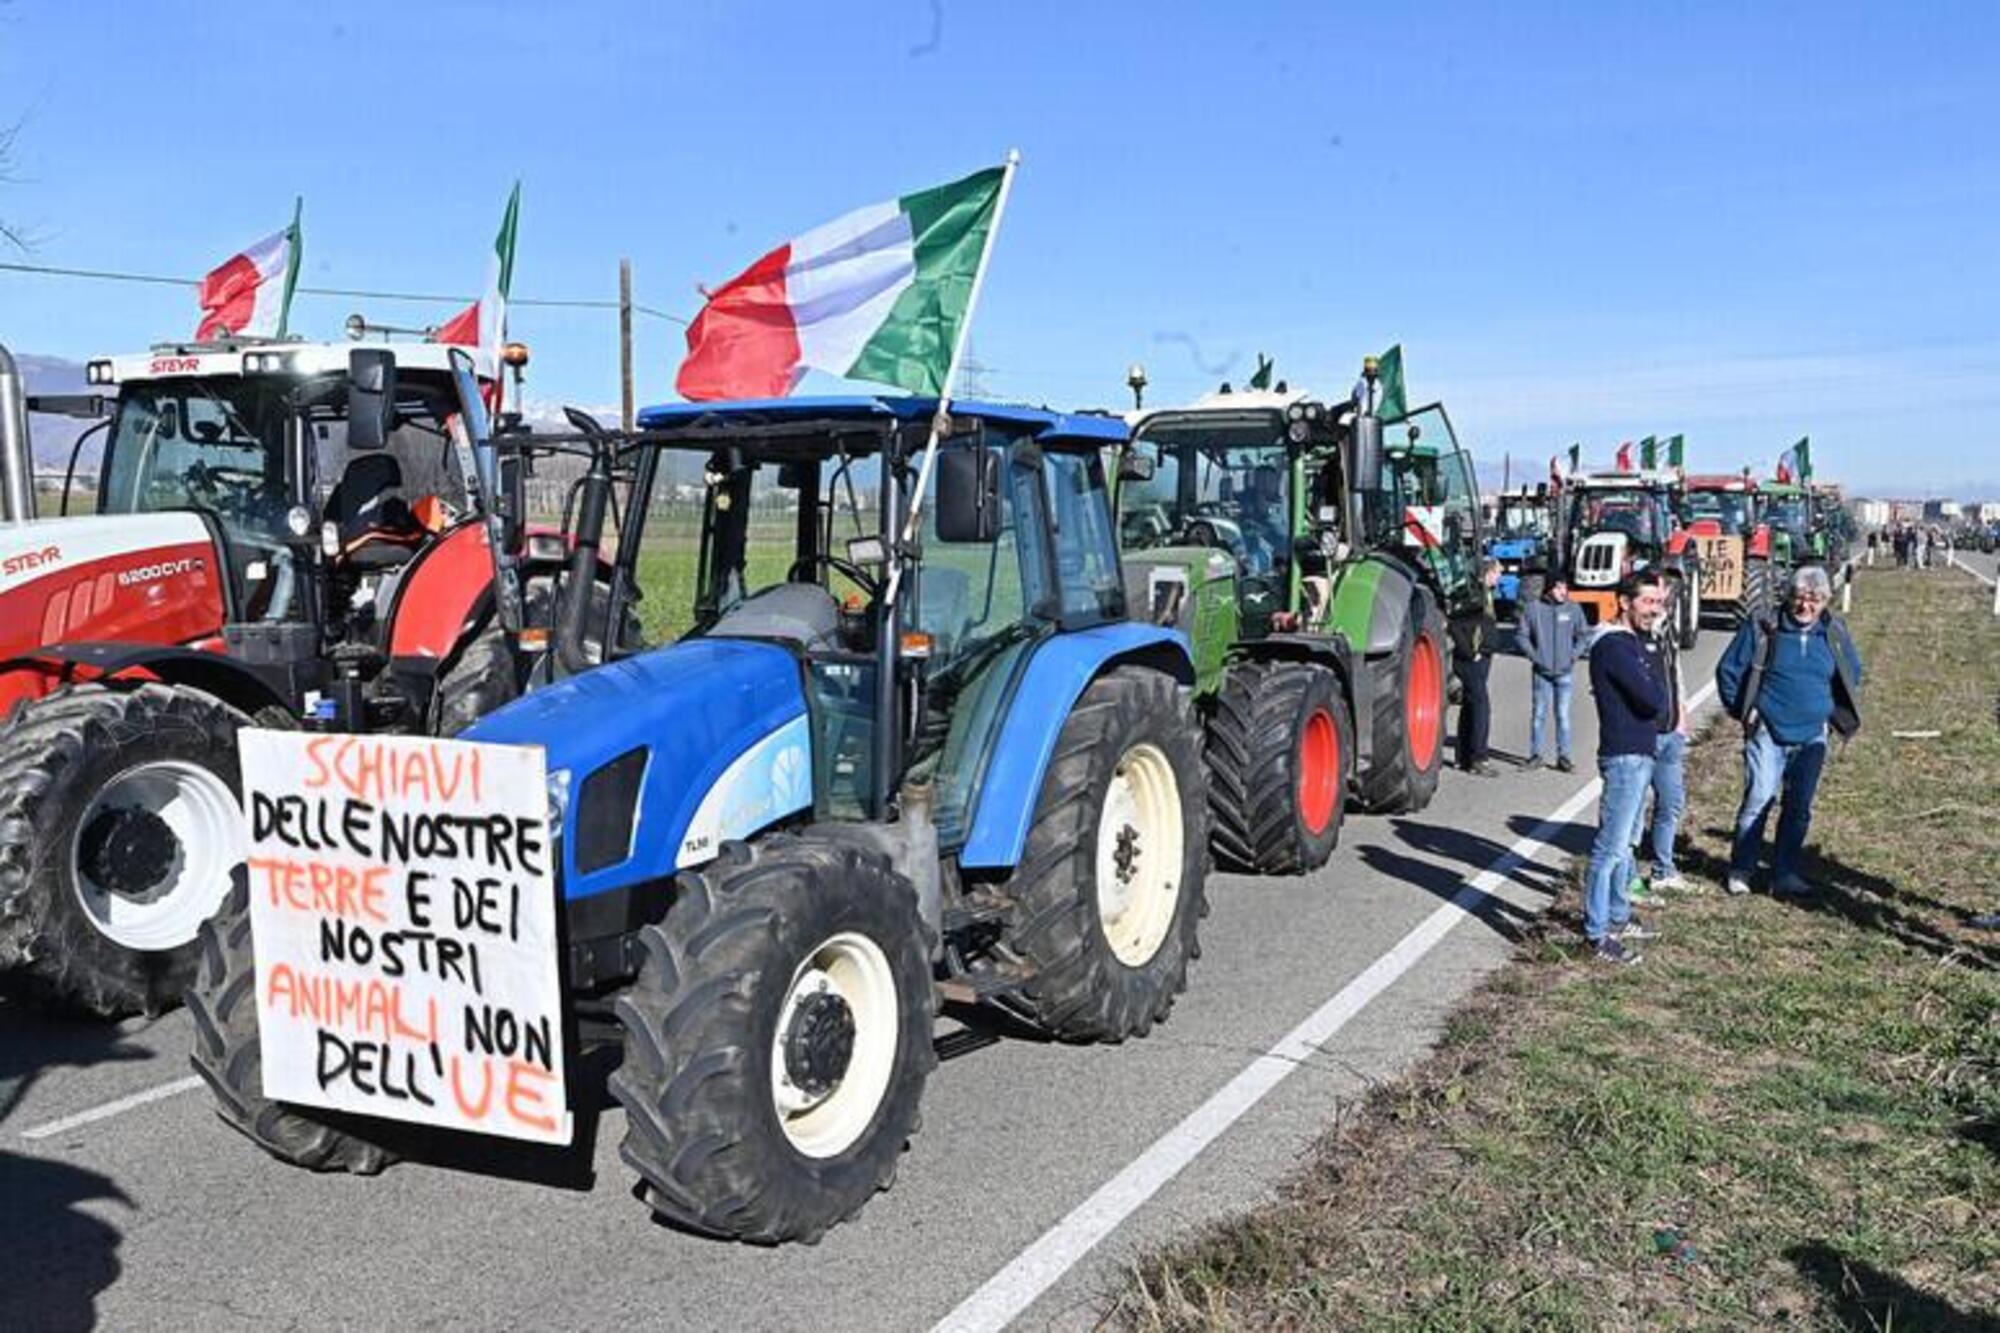 La protesta dei trattori punta Sanremo